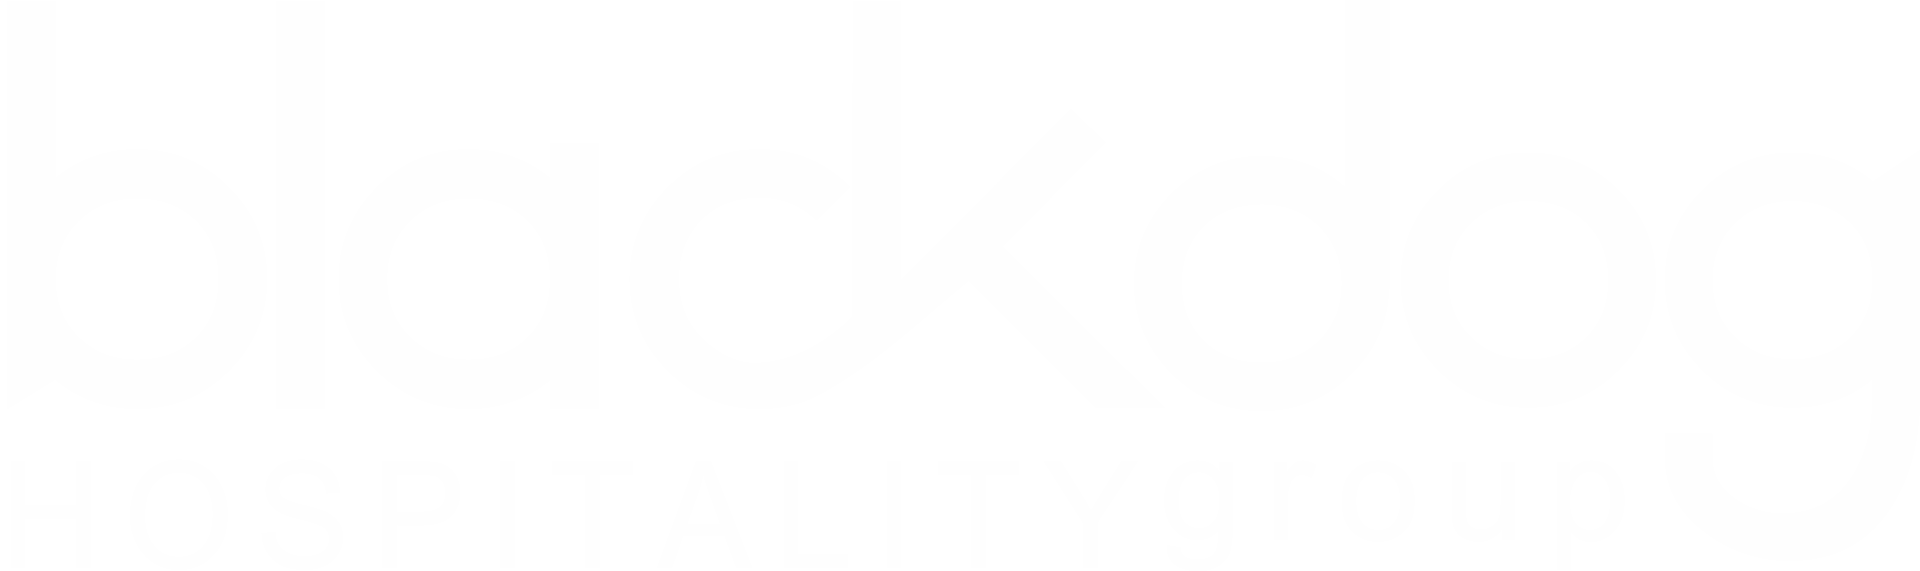 Black Dog Hospitality Group logo